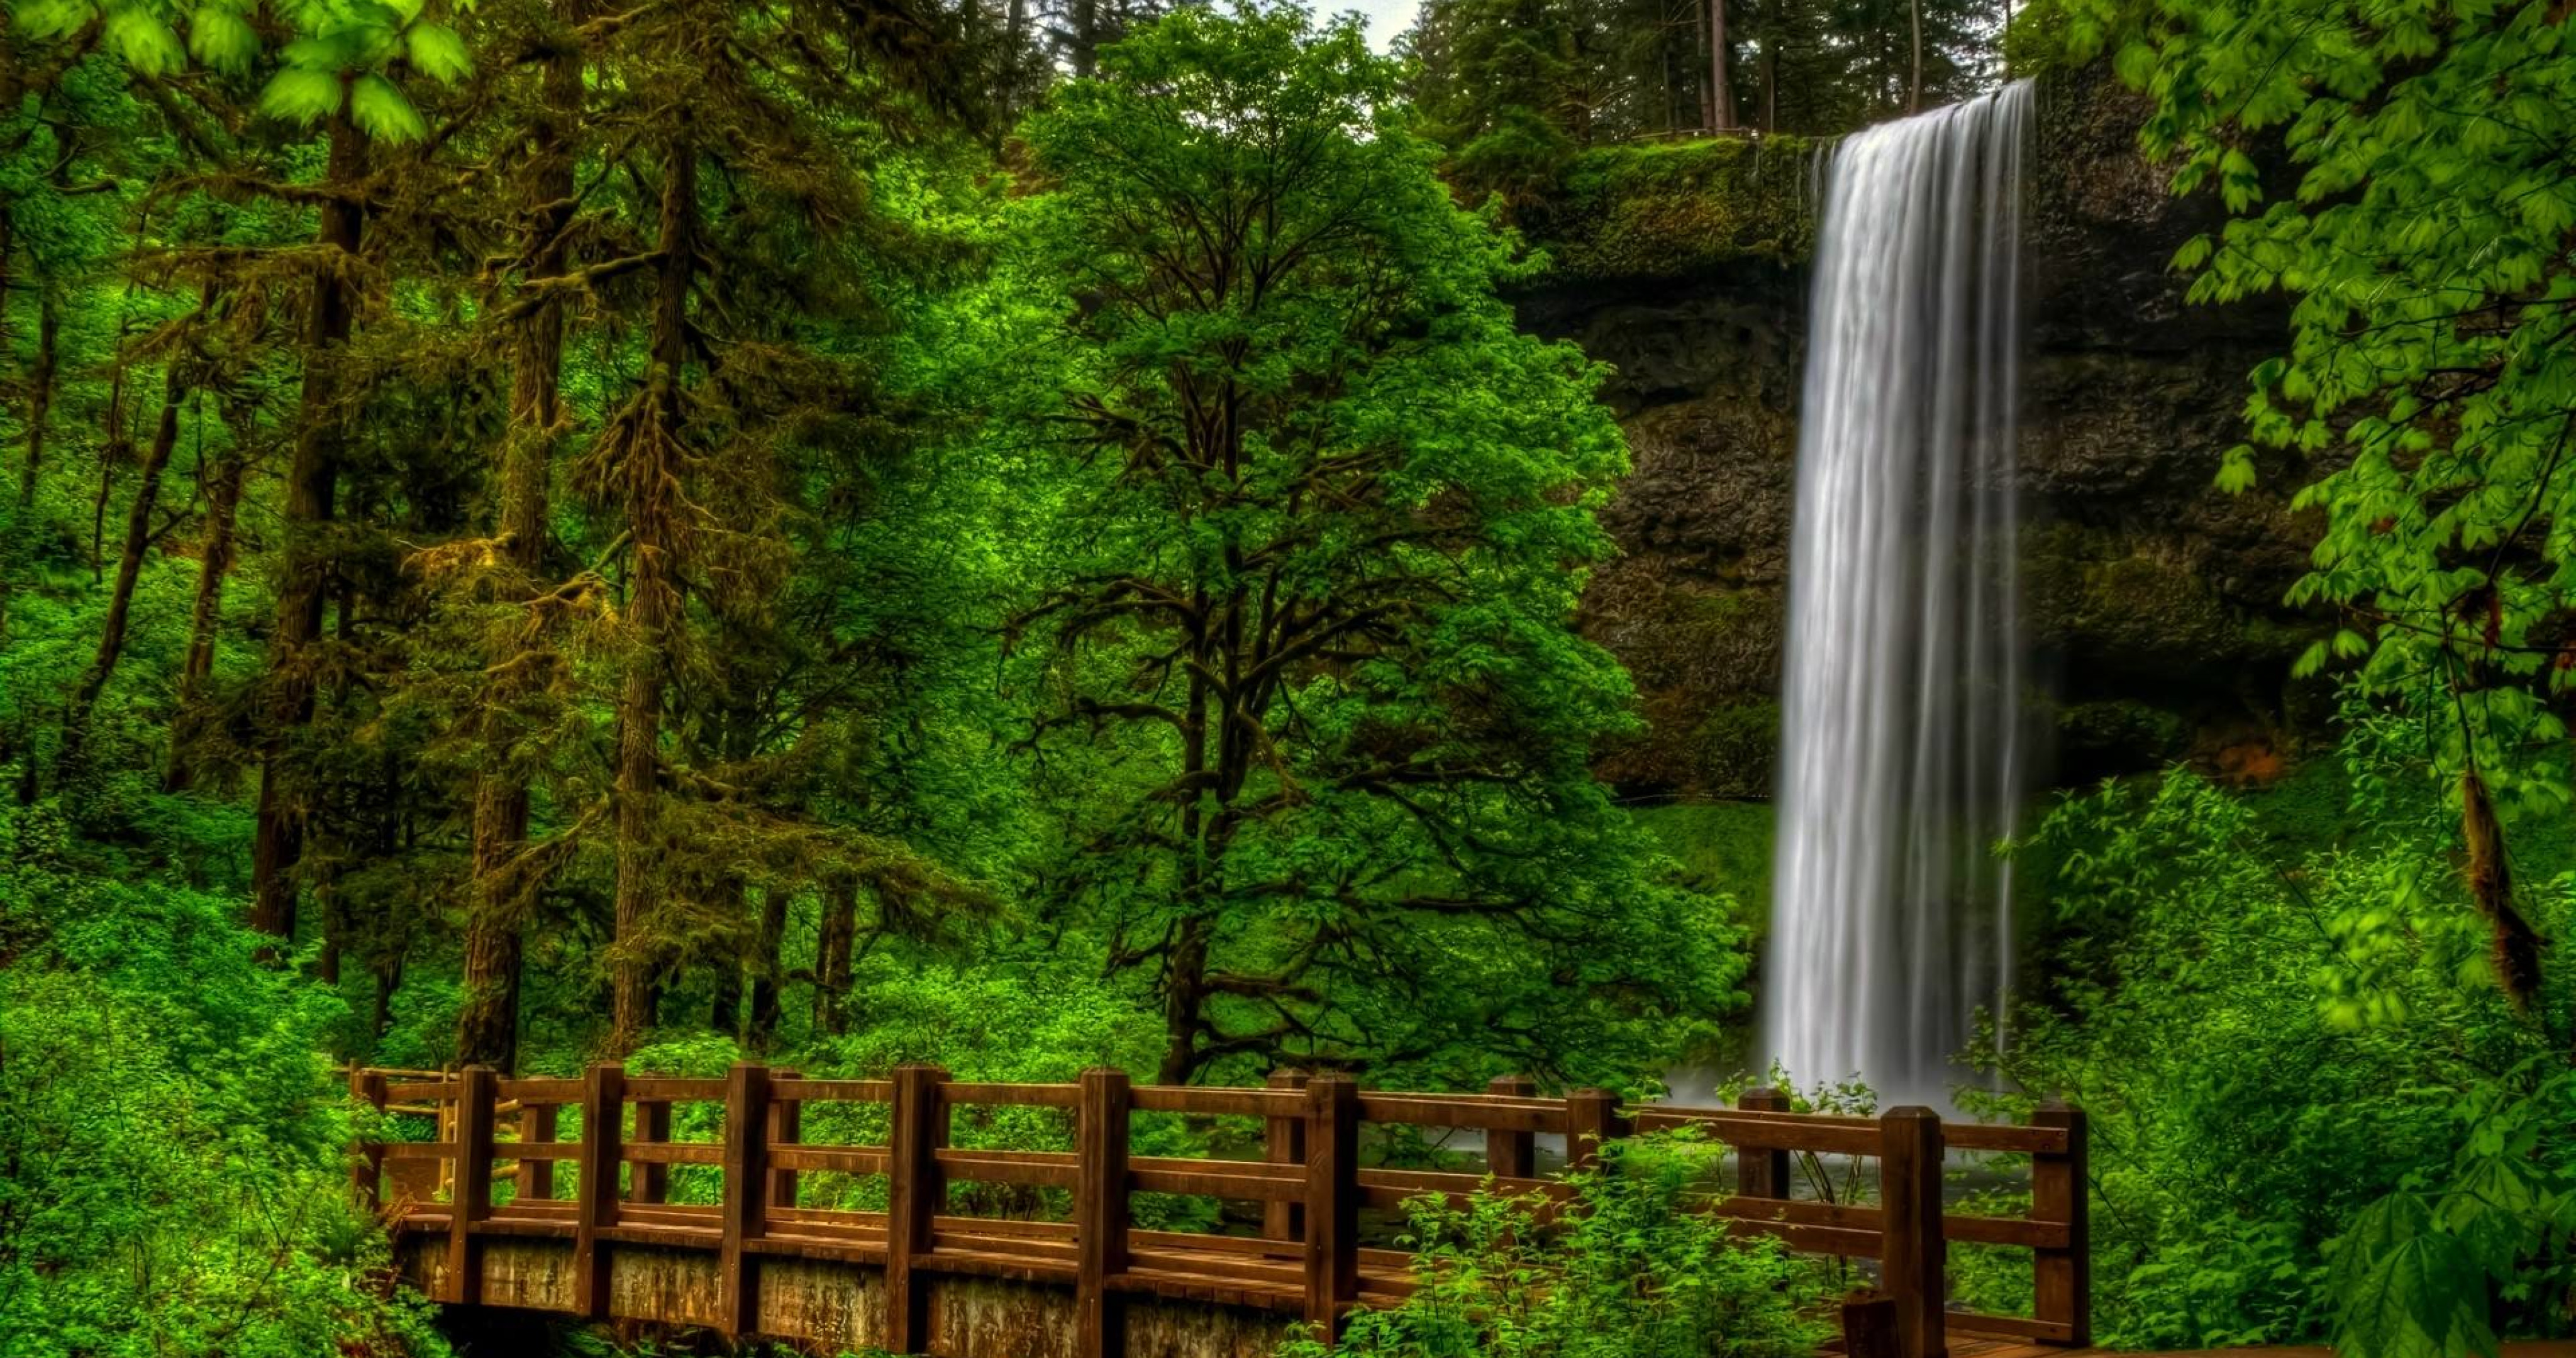 Красивые обои вертикальные на рабочий стол телефона. Природа. Водопад в лесу. Лесной водопад. Природа с деревьями и водопадами.